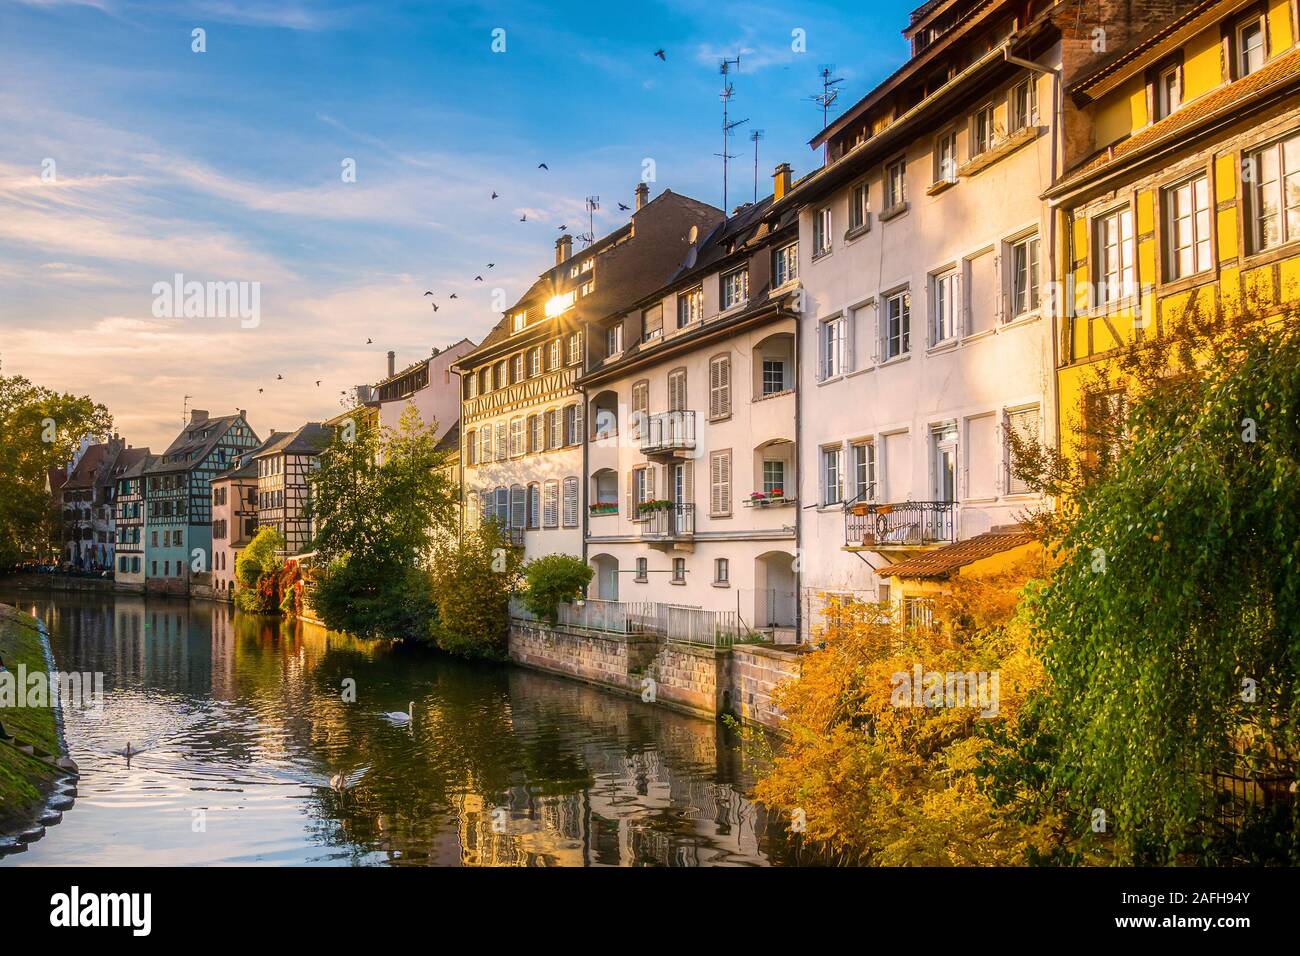 Malerische und ikonischen Stadtbild der Altstadt Petite France Bezirk, der Innenstadt von Straßburg, an einem sonnigen Nachmittag. Häuser entlang der Ill. Stockfoto